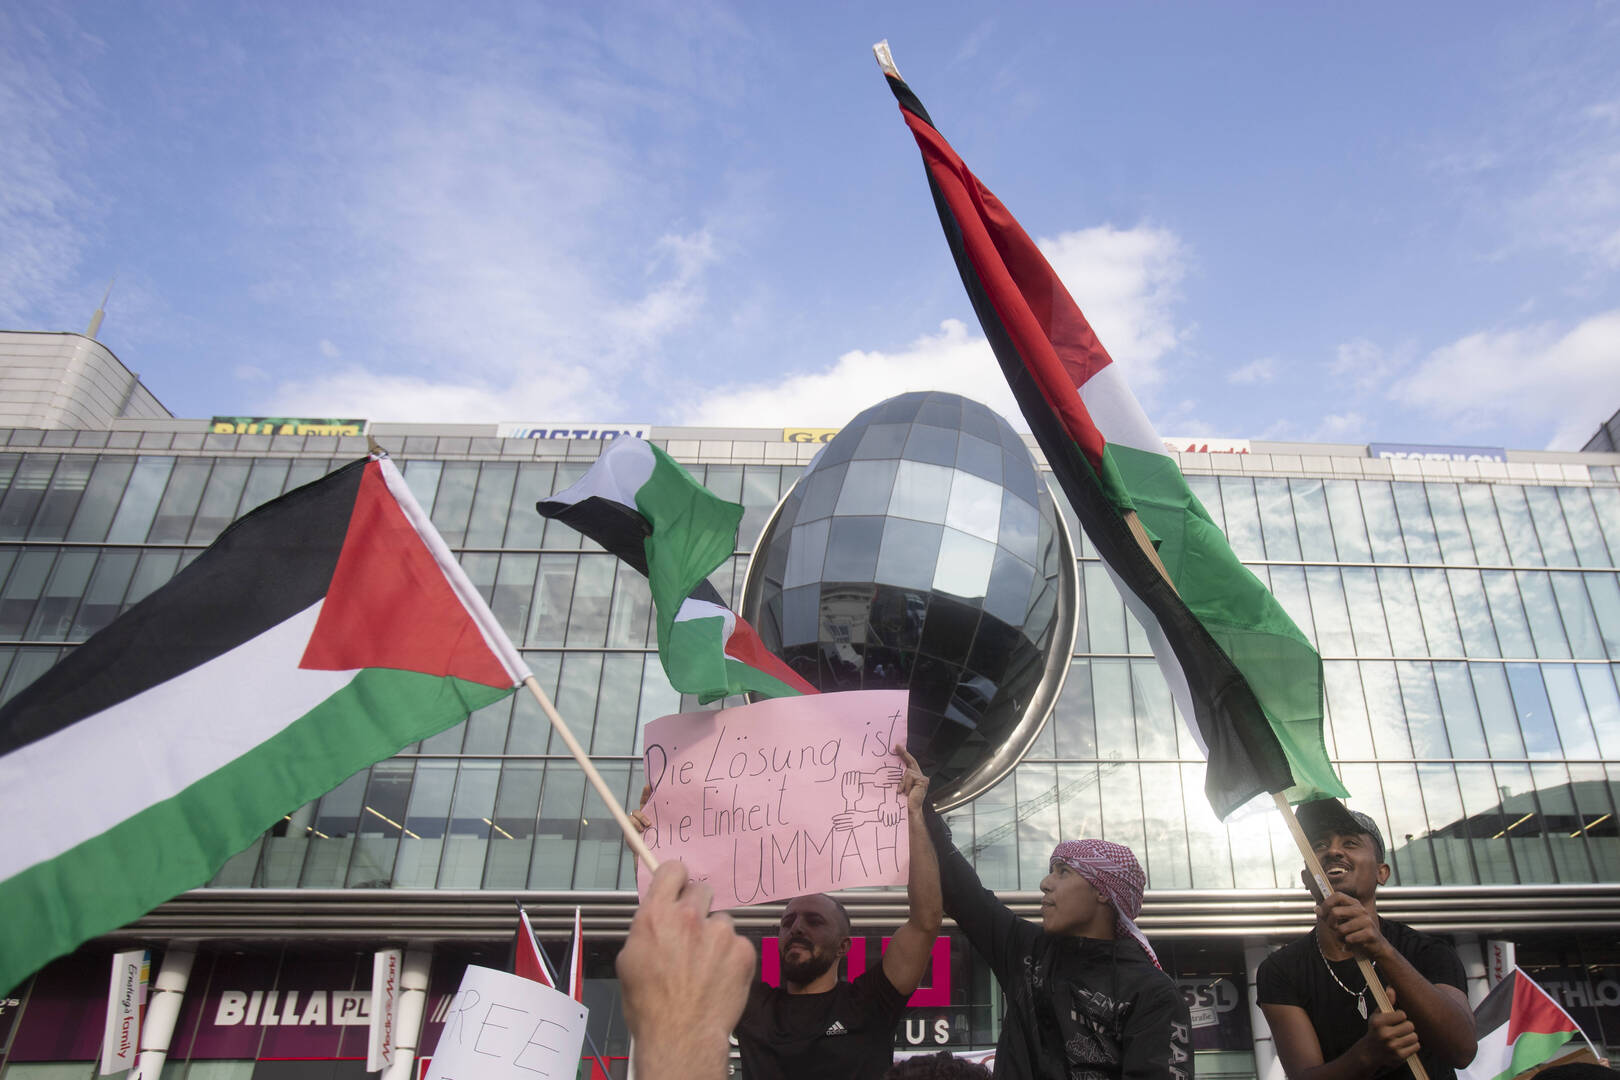 آلاف المتظاهرين يشاركون في مظاهرة مؤيدة للفلسطينيين في روتردام (فيديو)